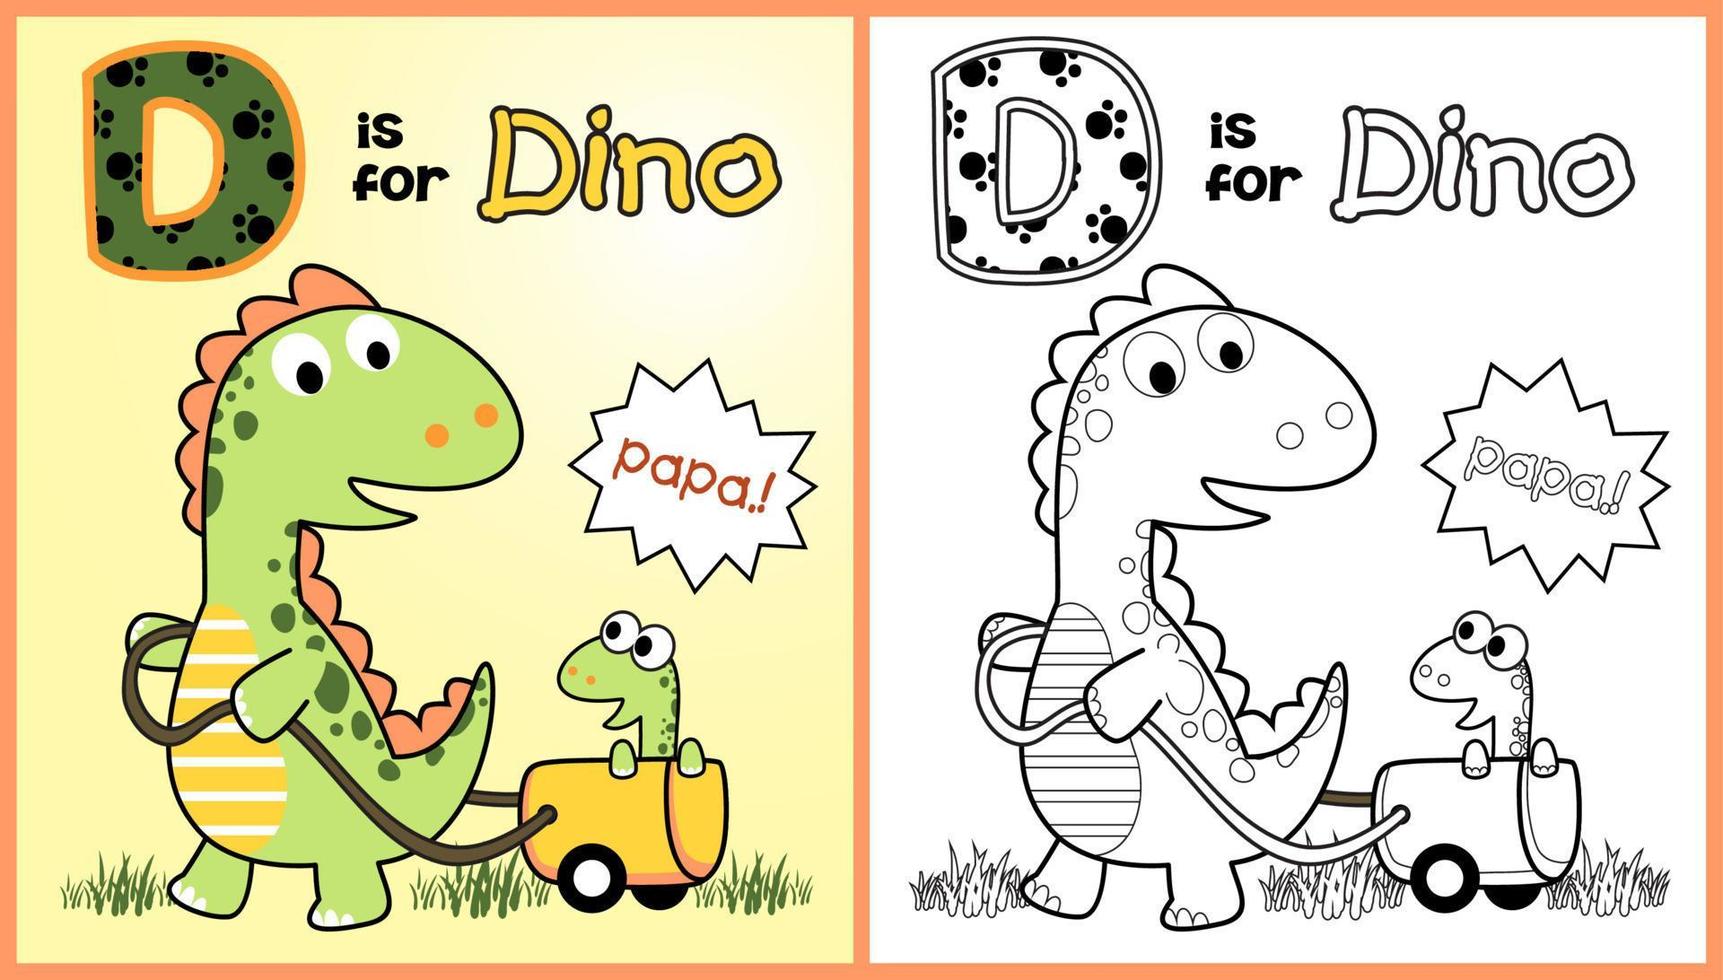 grappig dinosaurus trekken haar welp met kar, vector tekenfilm illustratie, kleur bladzijde of boek